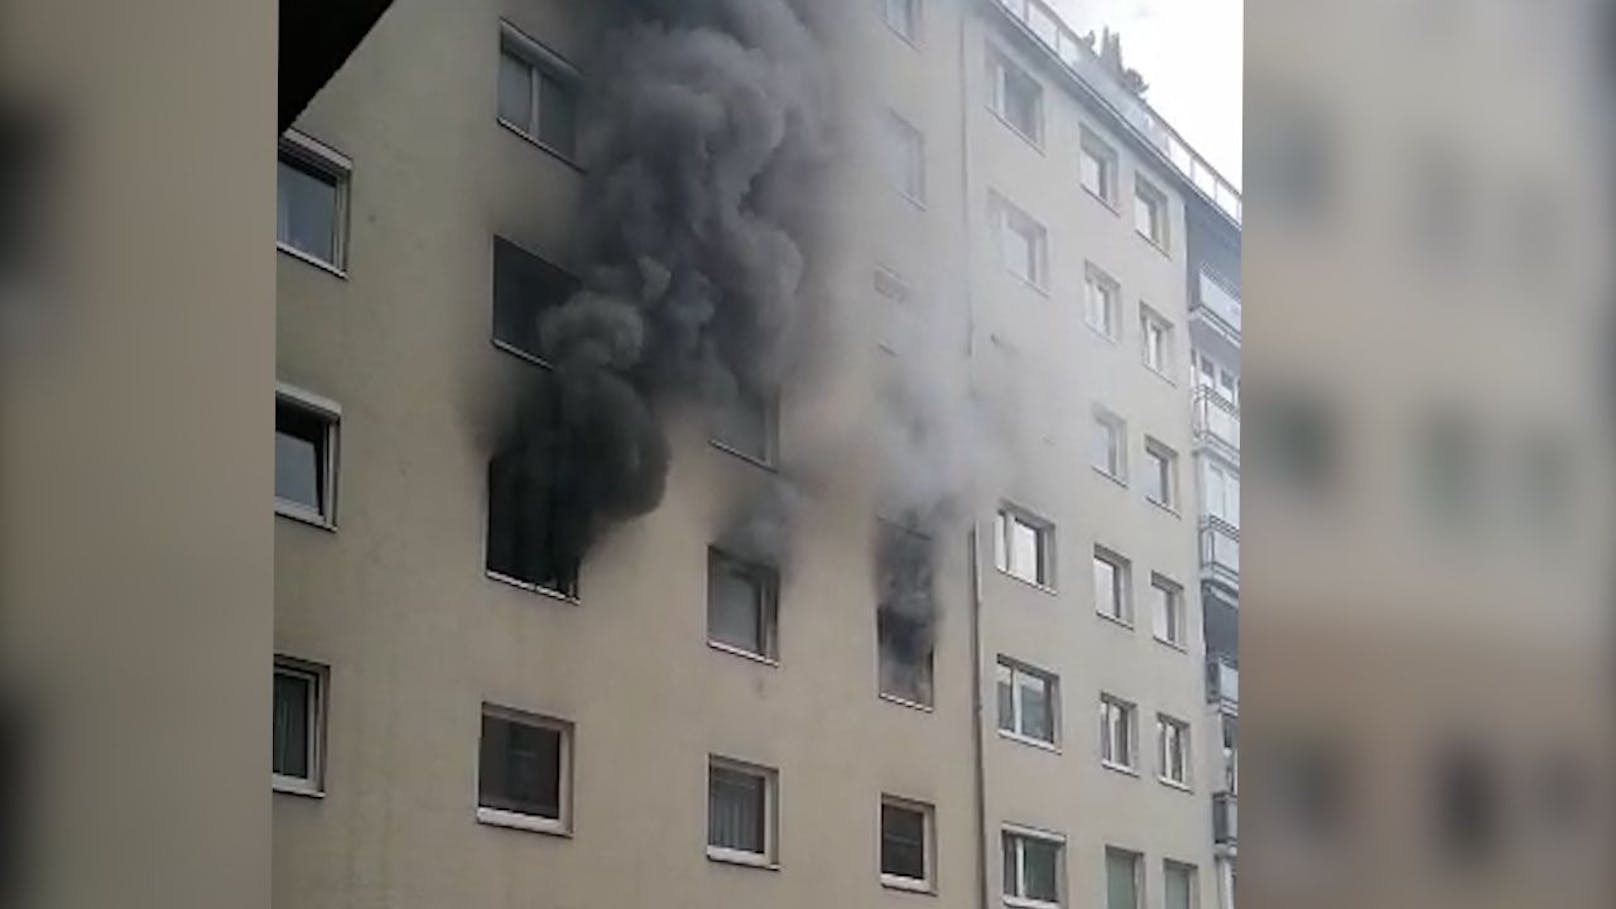 Zimmerbrand in Brigittenau – Straße komplett verraucht